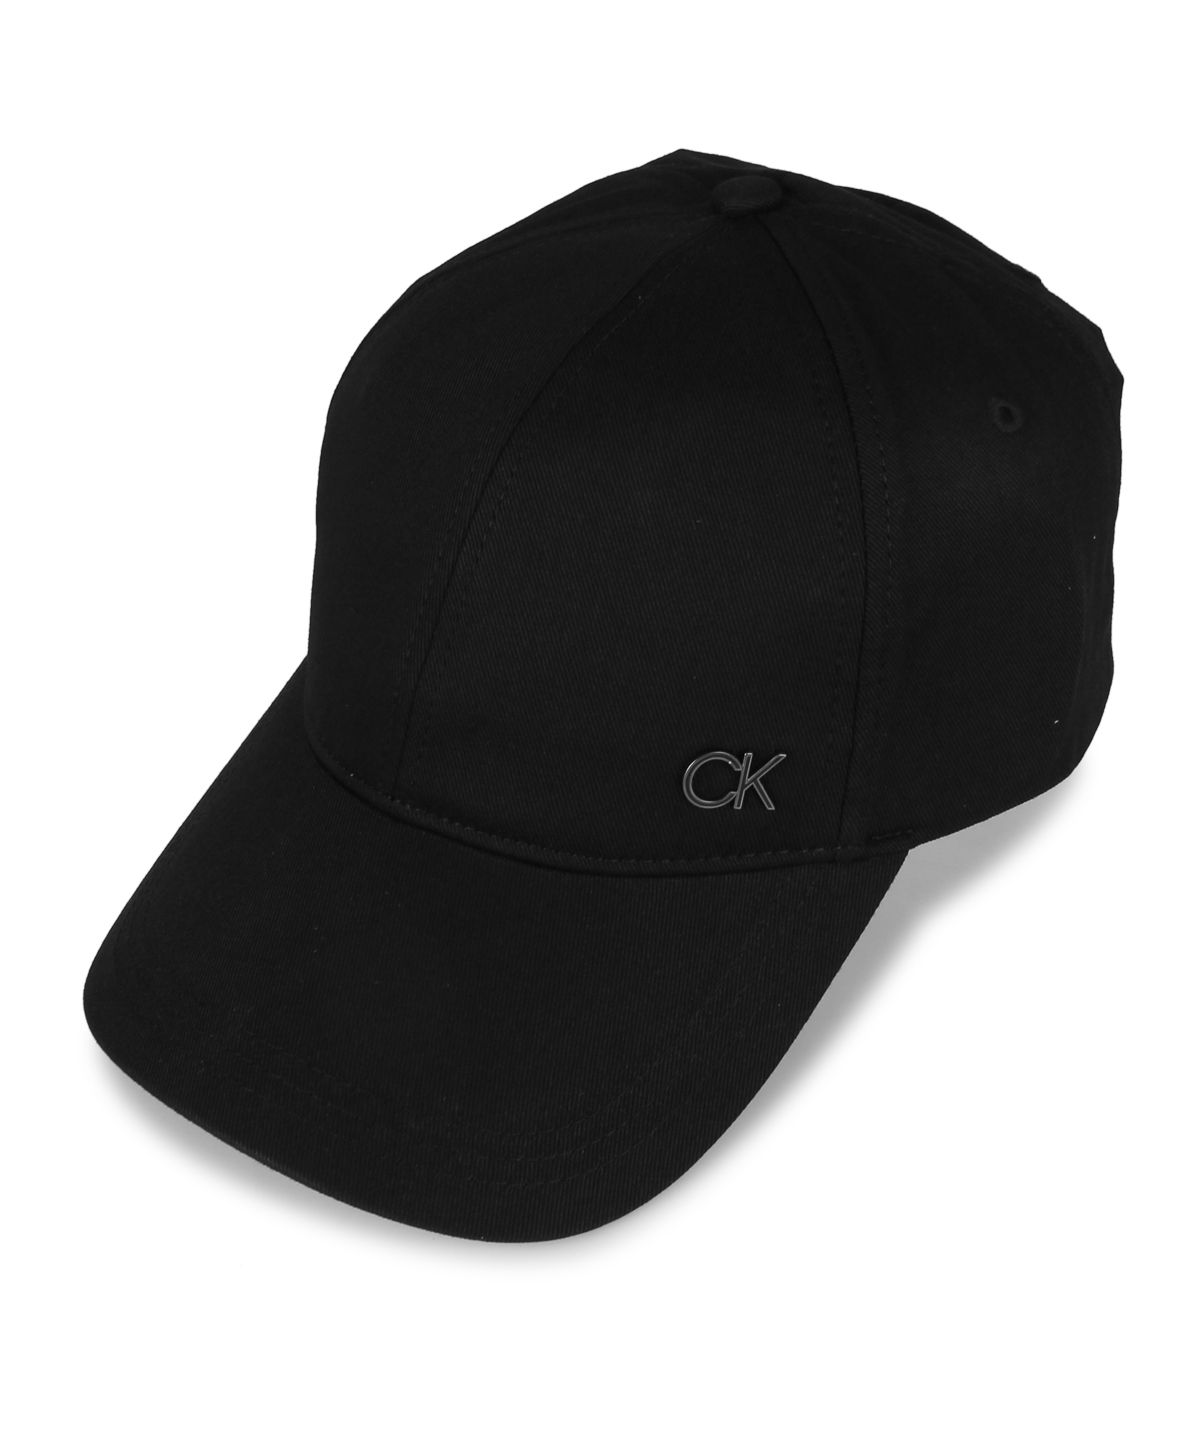 カルバンクライン Calvin Klein キャップ 帽子 ベースボールキャップ 